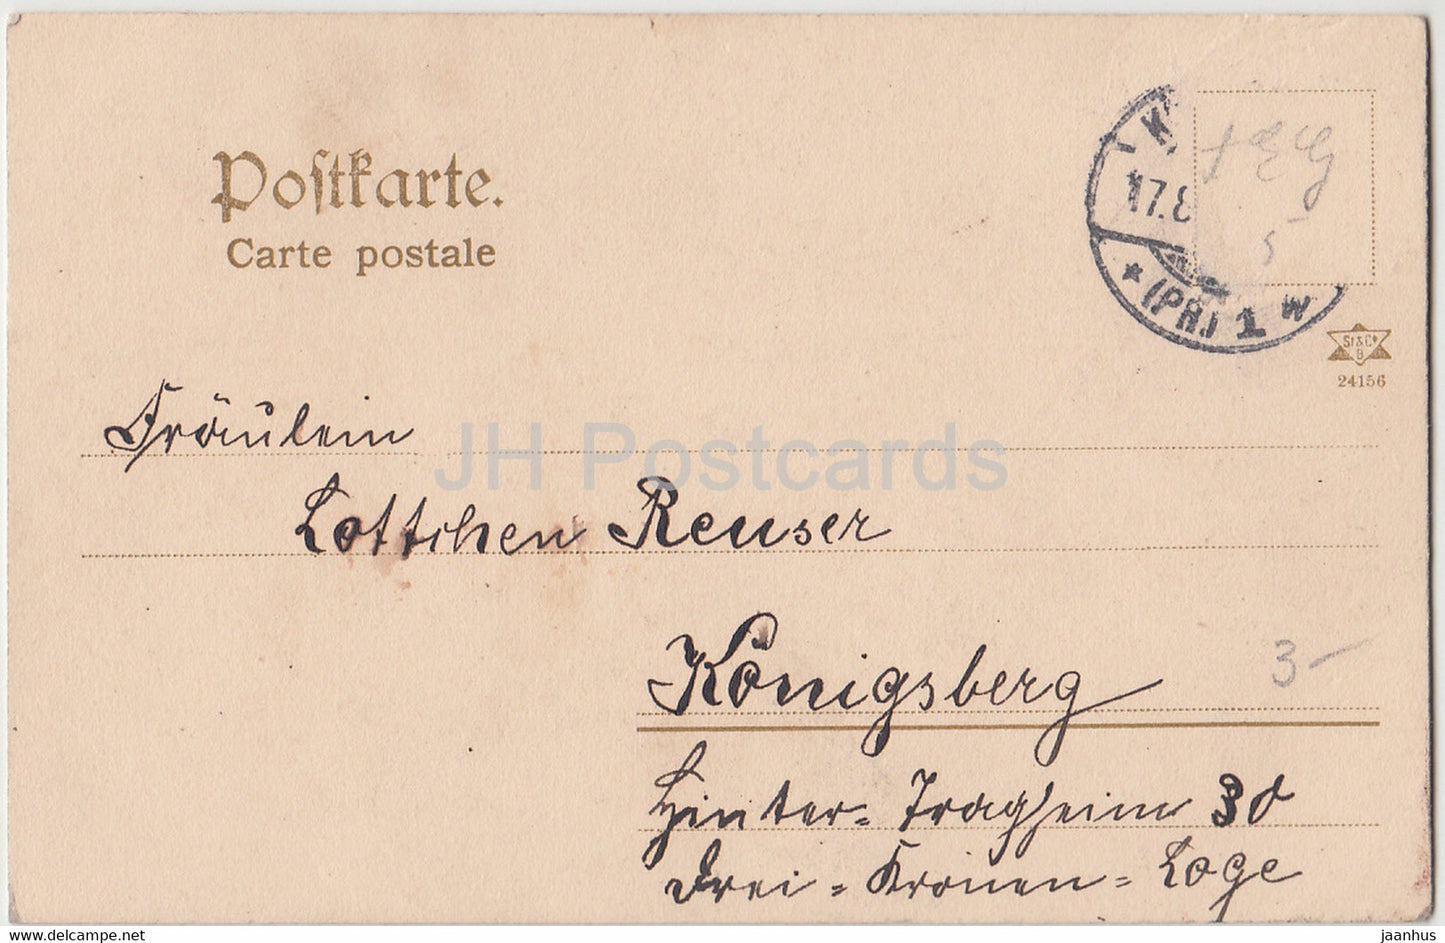 garçon et fille - enfants - costumes folkloriques - pêcheur - Königsberg - carte postale ancienne - années 1900 - Allemagne - utilisé